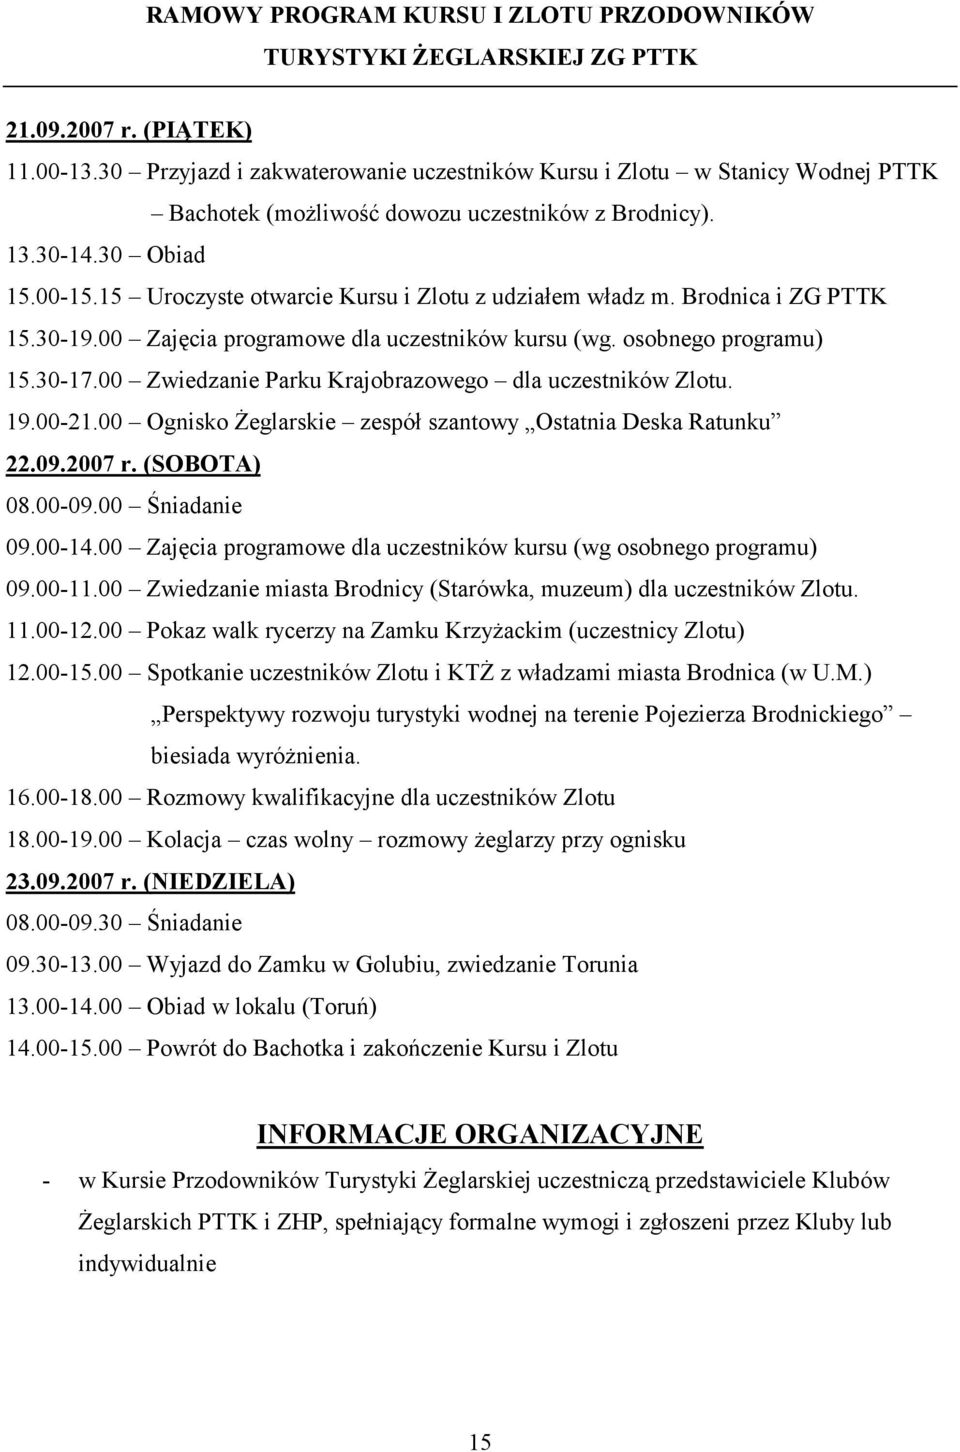 15 Uroczyste otwarcie Kursu i Zlotu z udziałem władz m. Brodnica i ZG PTTK 15.30-19.00 Zajęcia programowe dla uczestników kursu (wg. osobnego programu) 15.30-17.